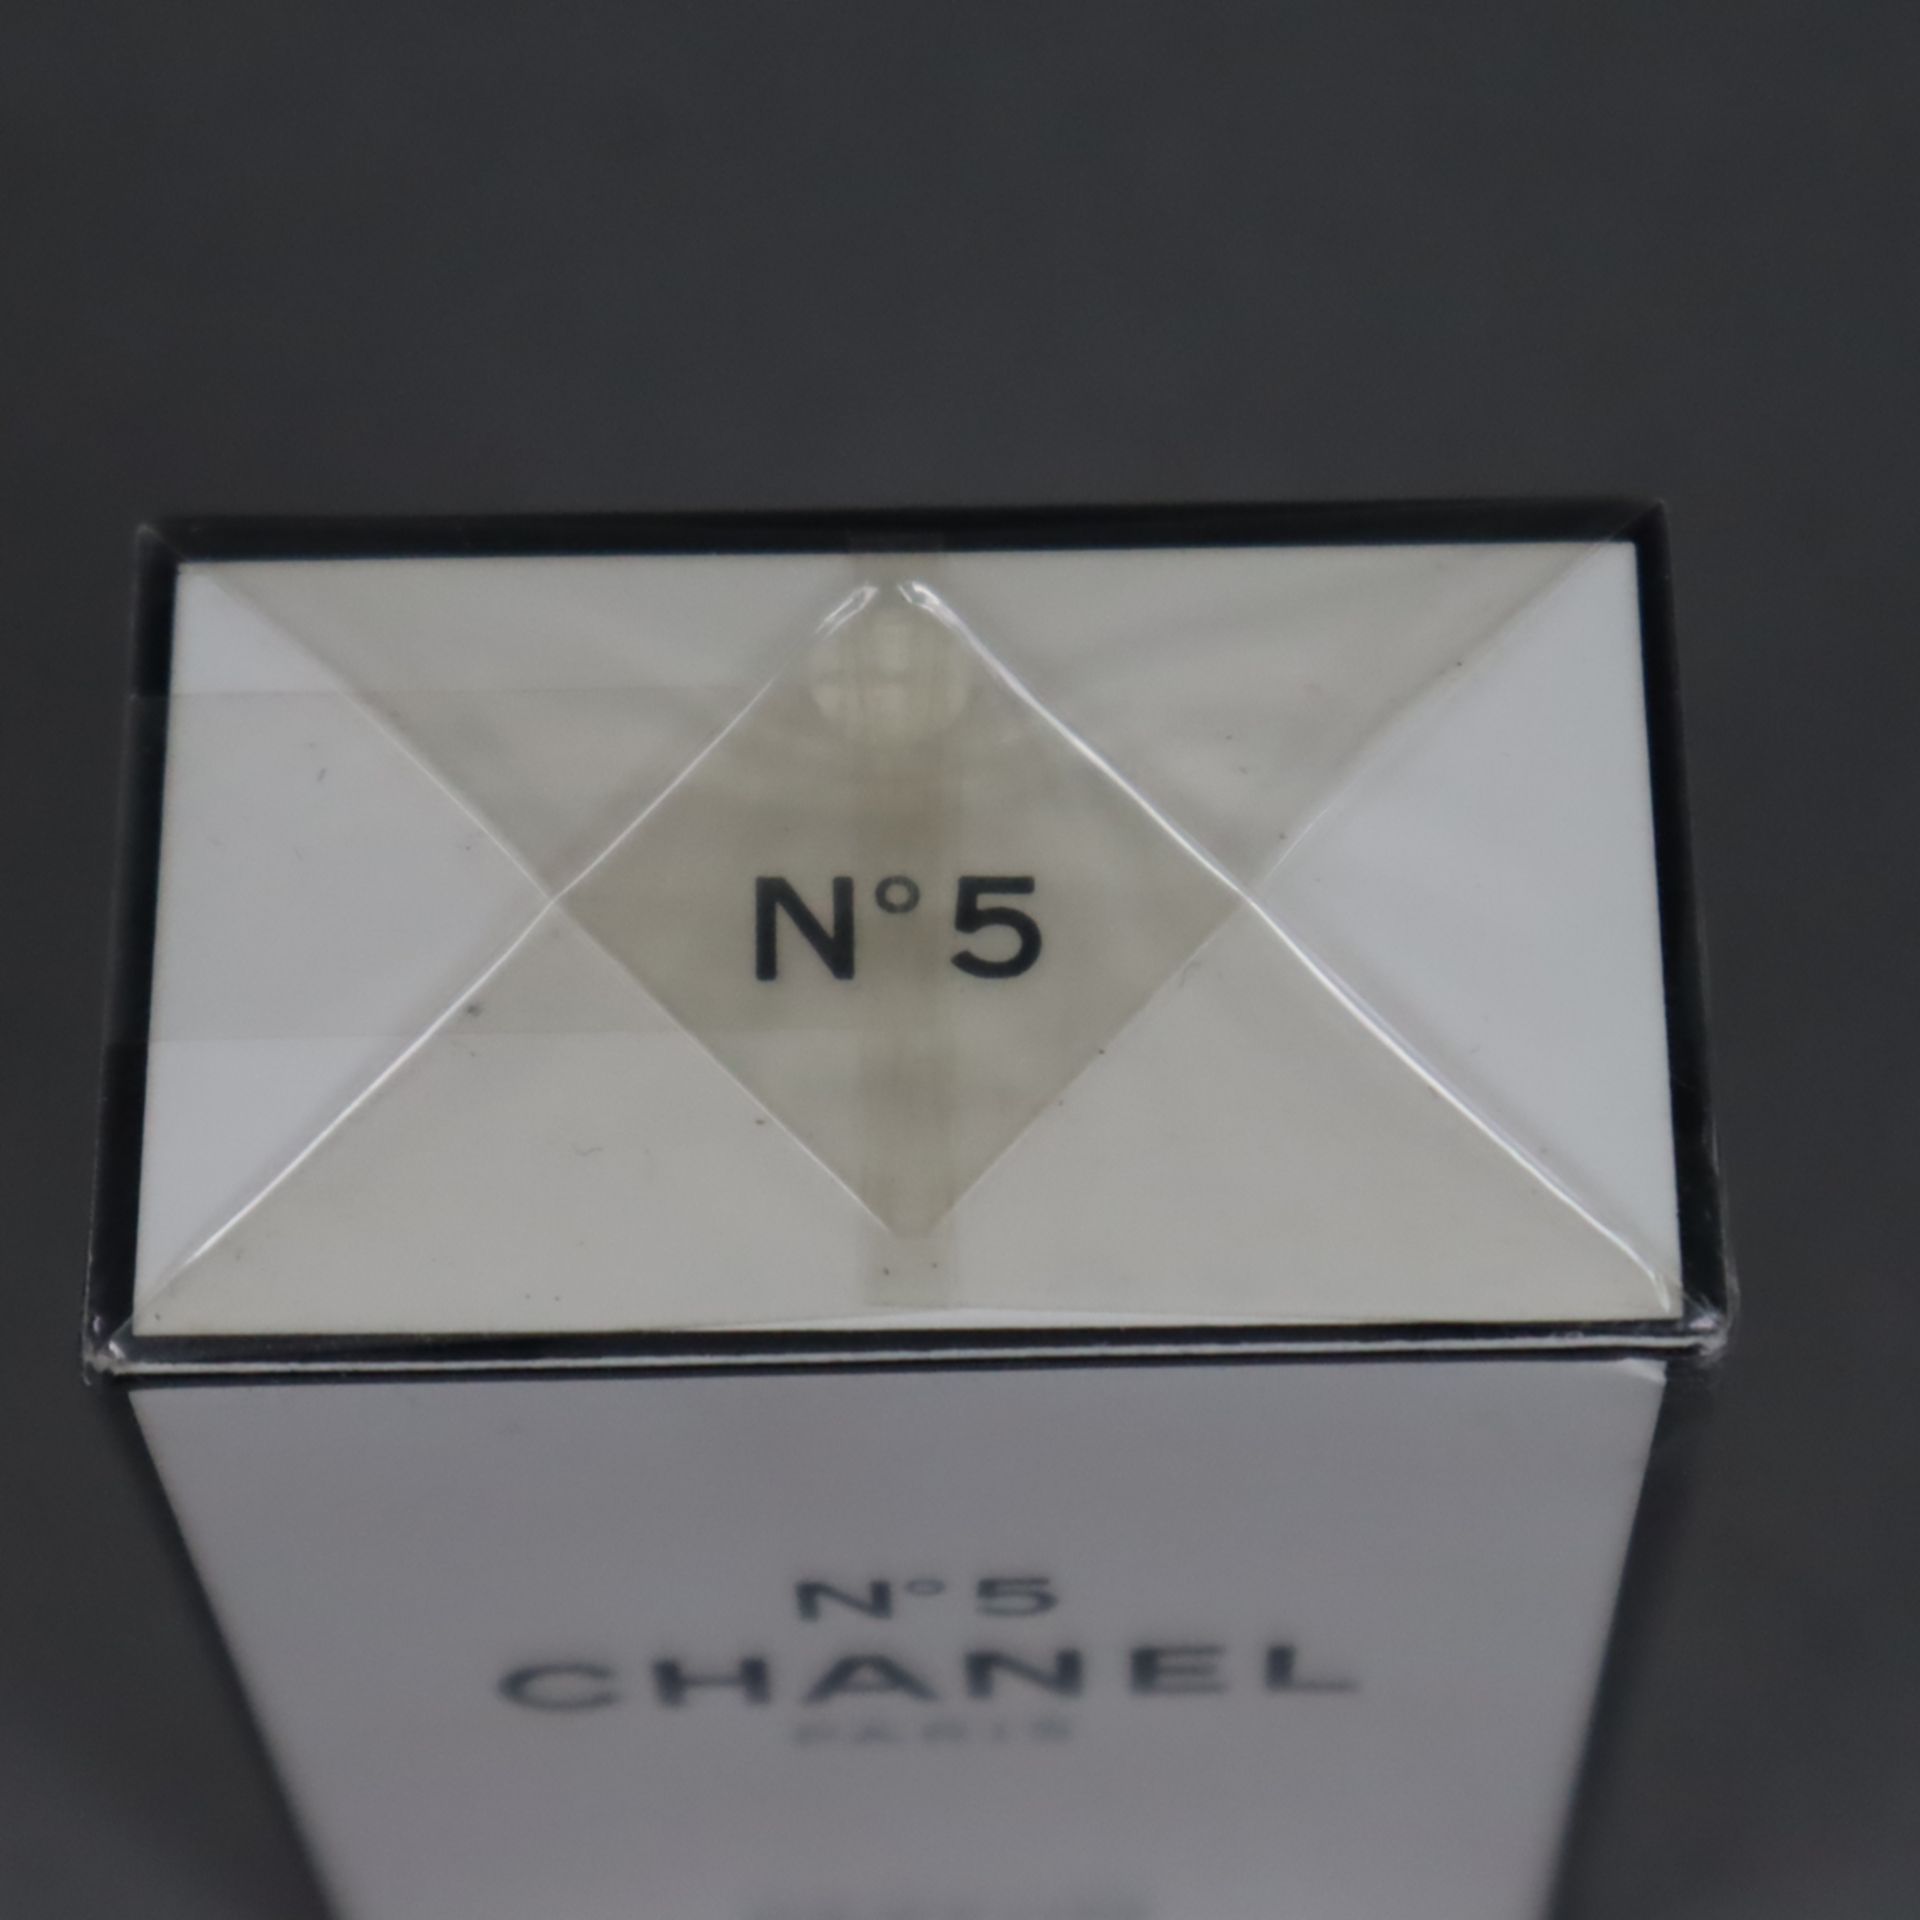 CHANEL N° 5 - PARIS, Parfum, 14 ml, ungeöffnete versiegelte Originalverpackung, ca.7,5x5,4x3,3cm - Image 2 of 4